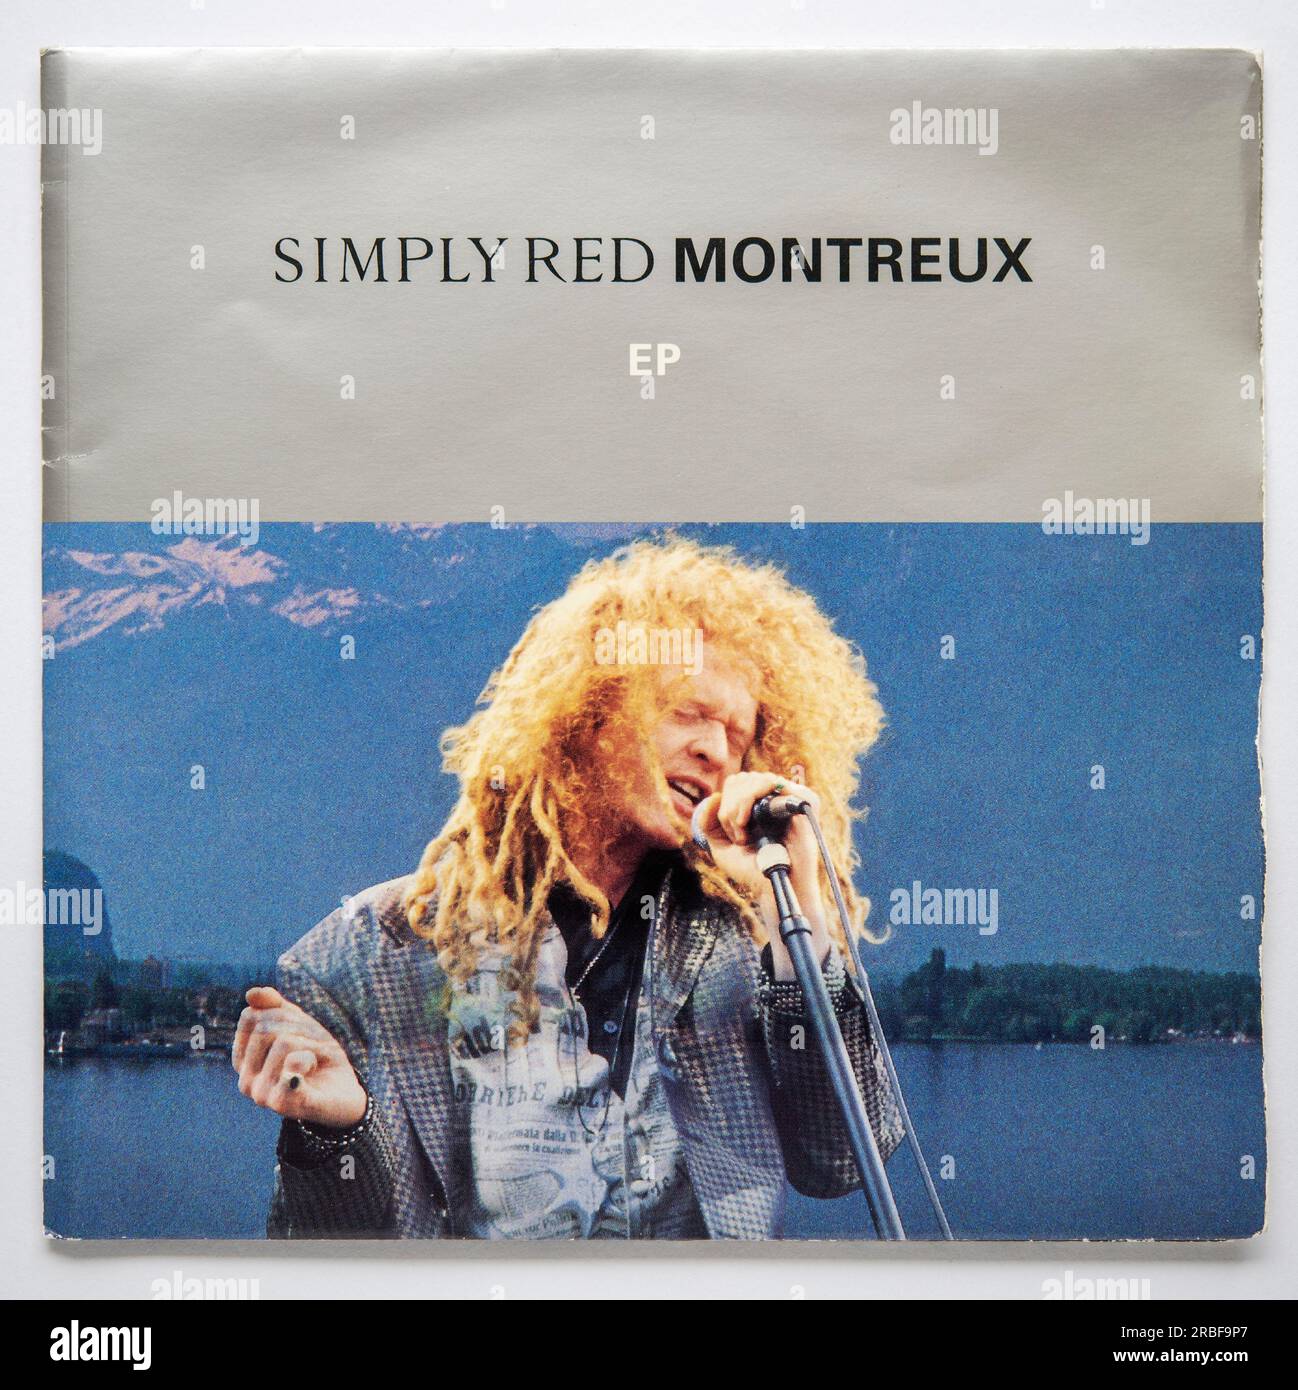 Bildcover des Montreux EP von Simply Red, das 1992 veröffentlicht wurde Stockfoto